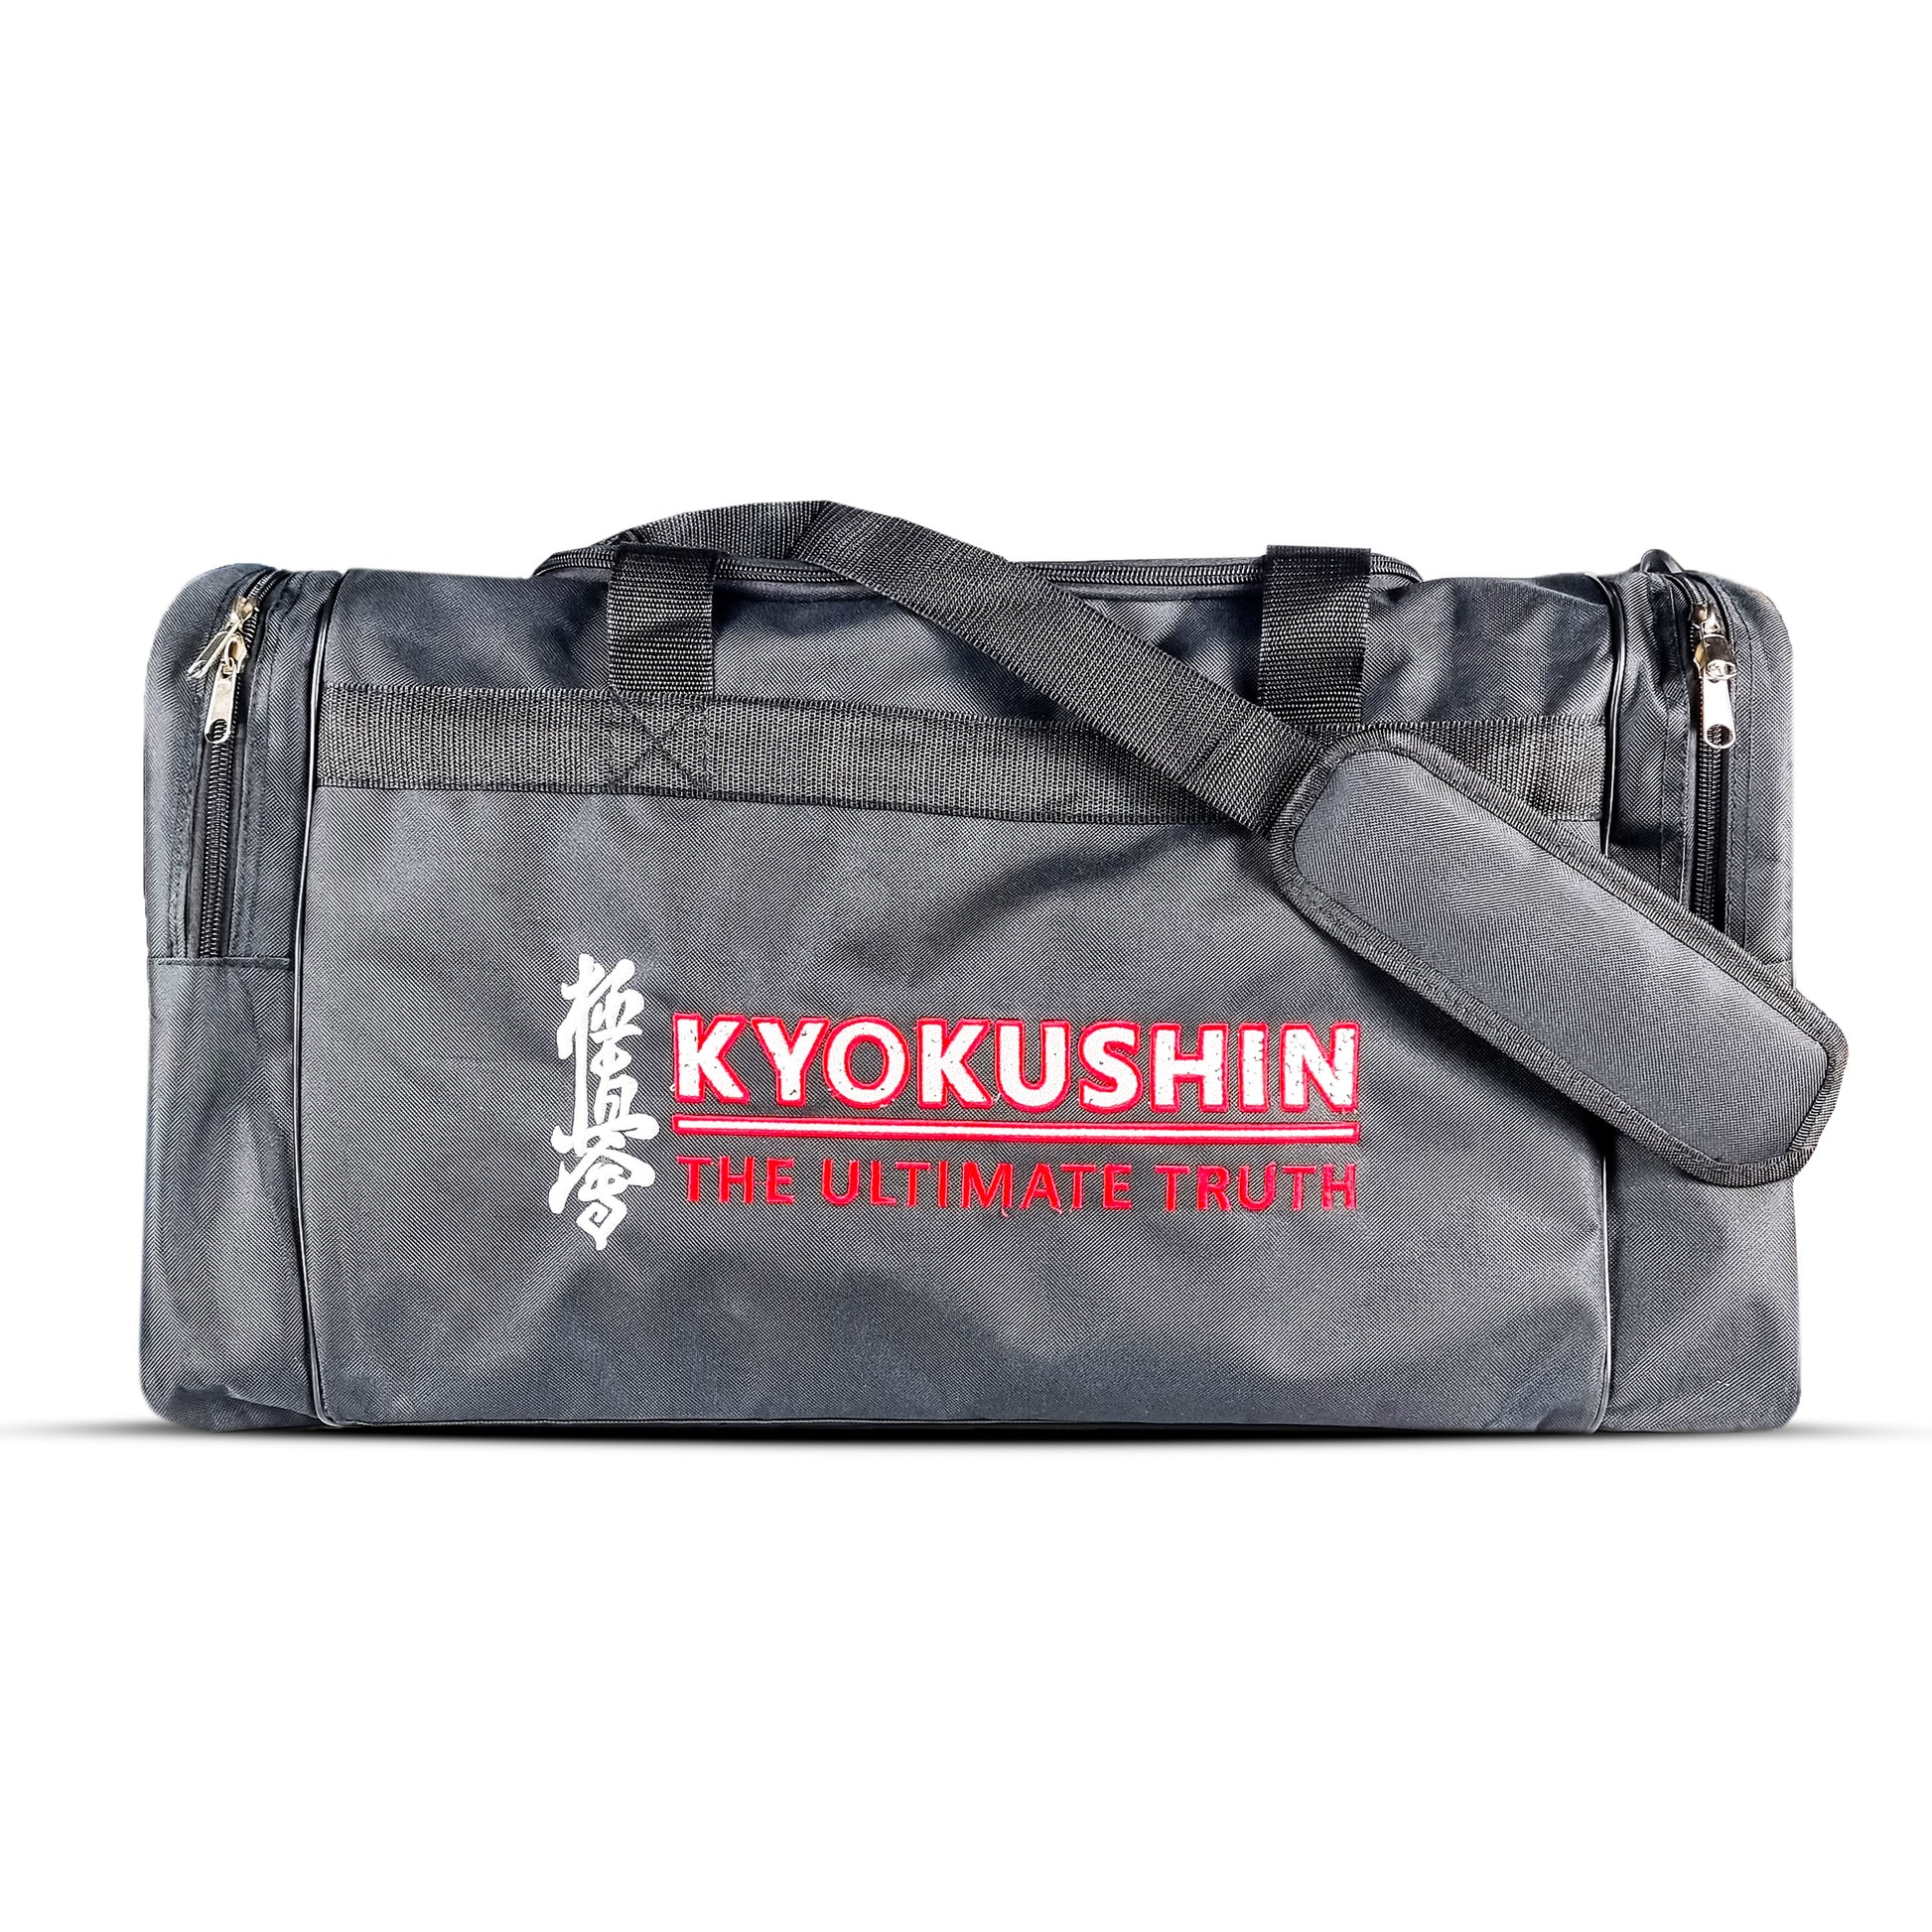 kyokushiun-duffle-bags